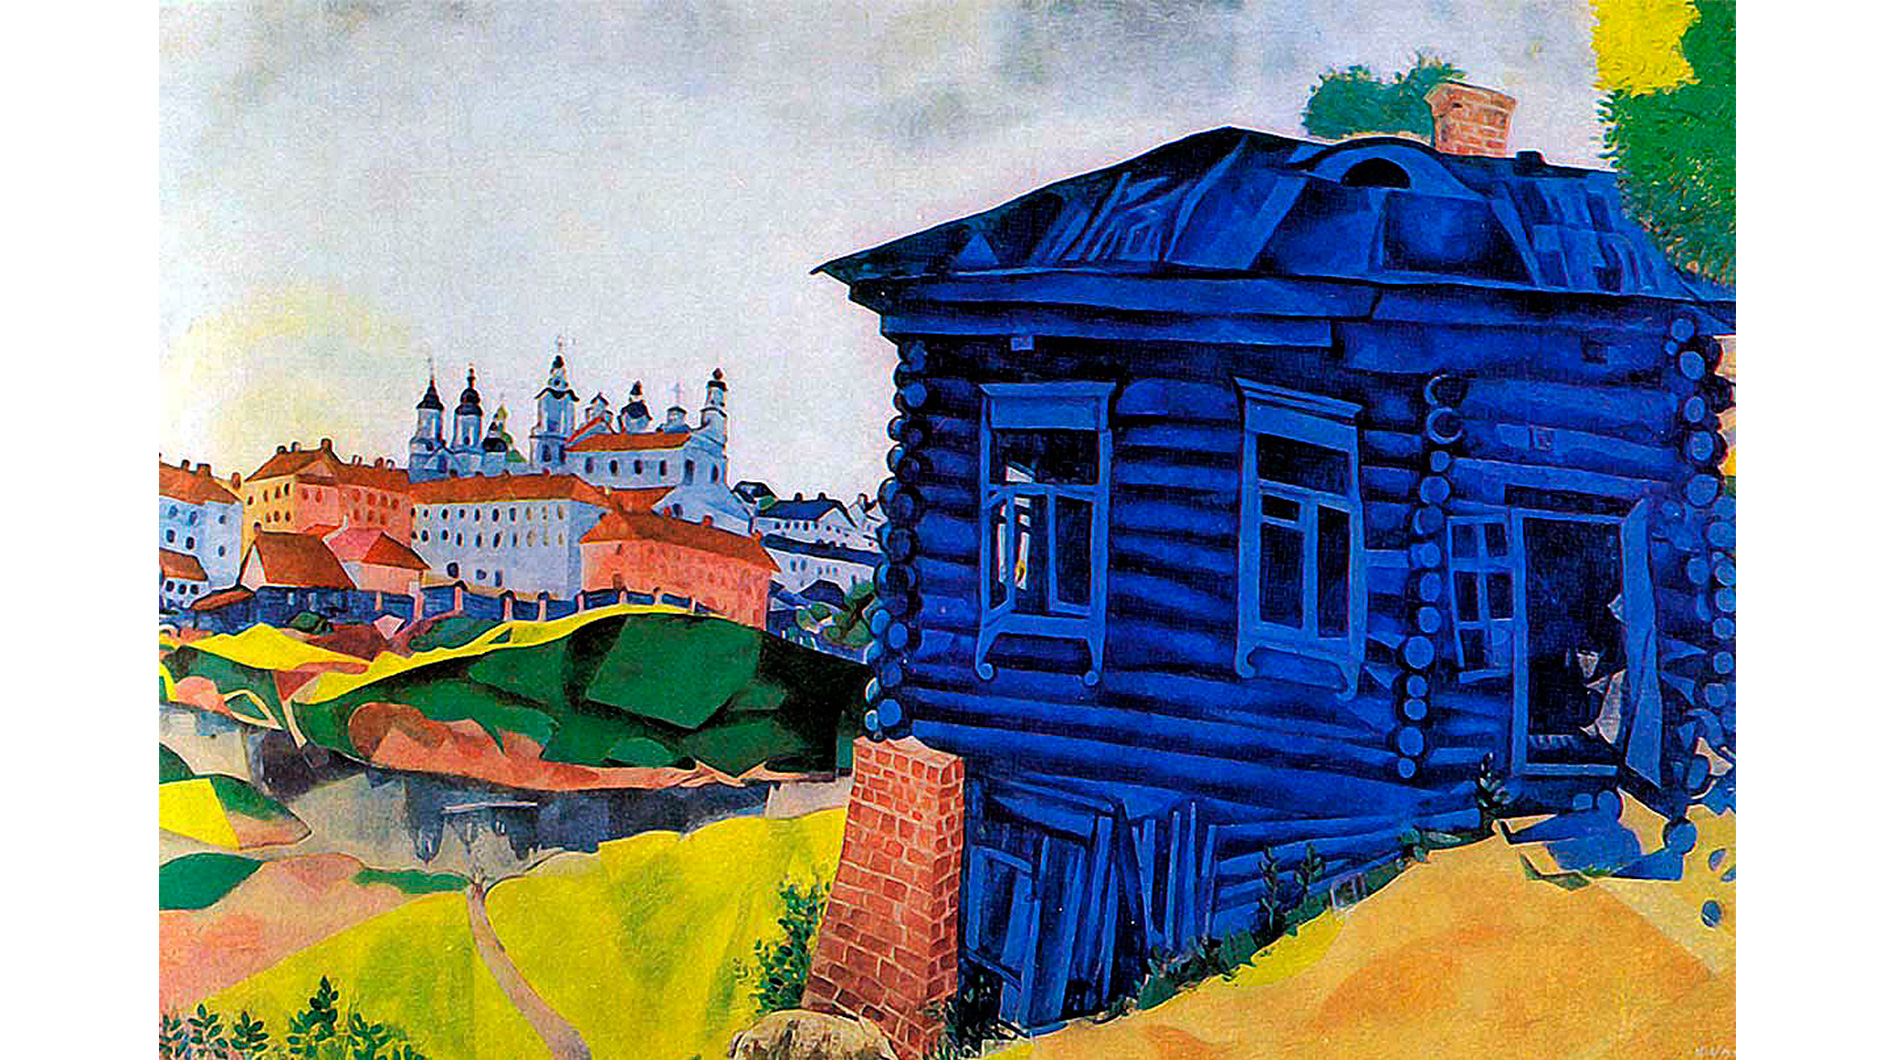 Марк Шагал. “Синий дом” (1917)